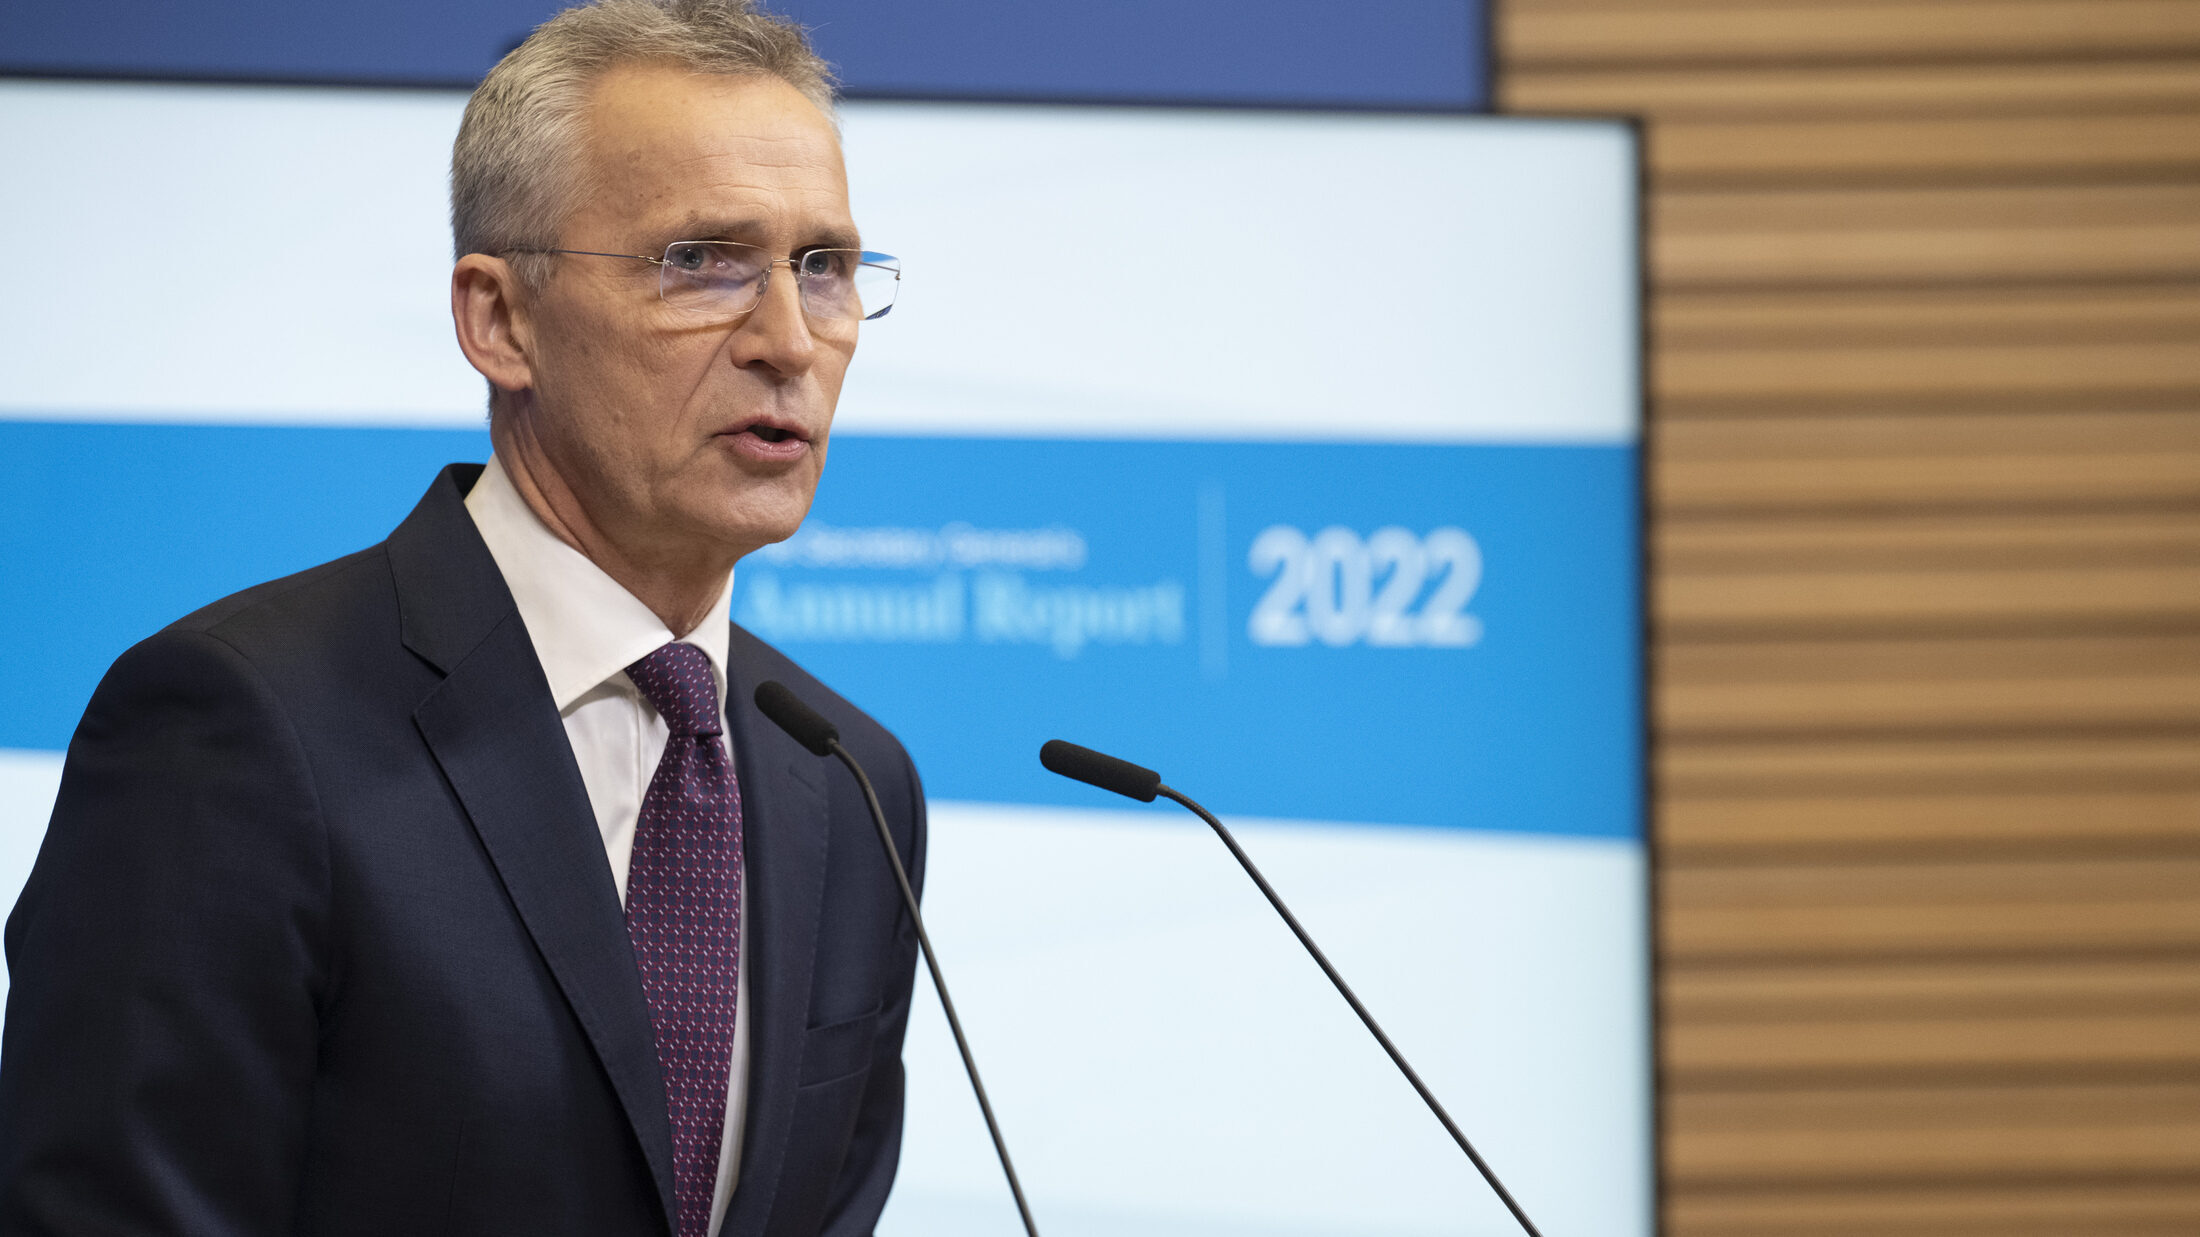 NATO Secretary General releases Annual Report 2022